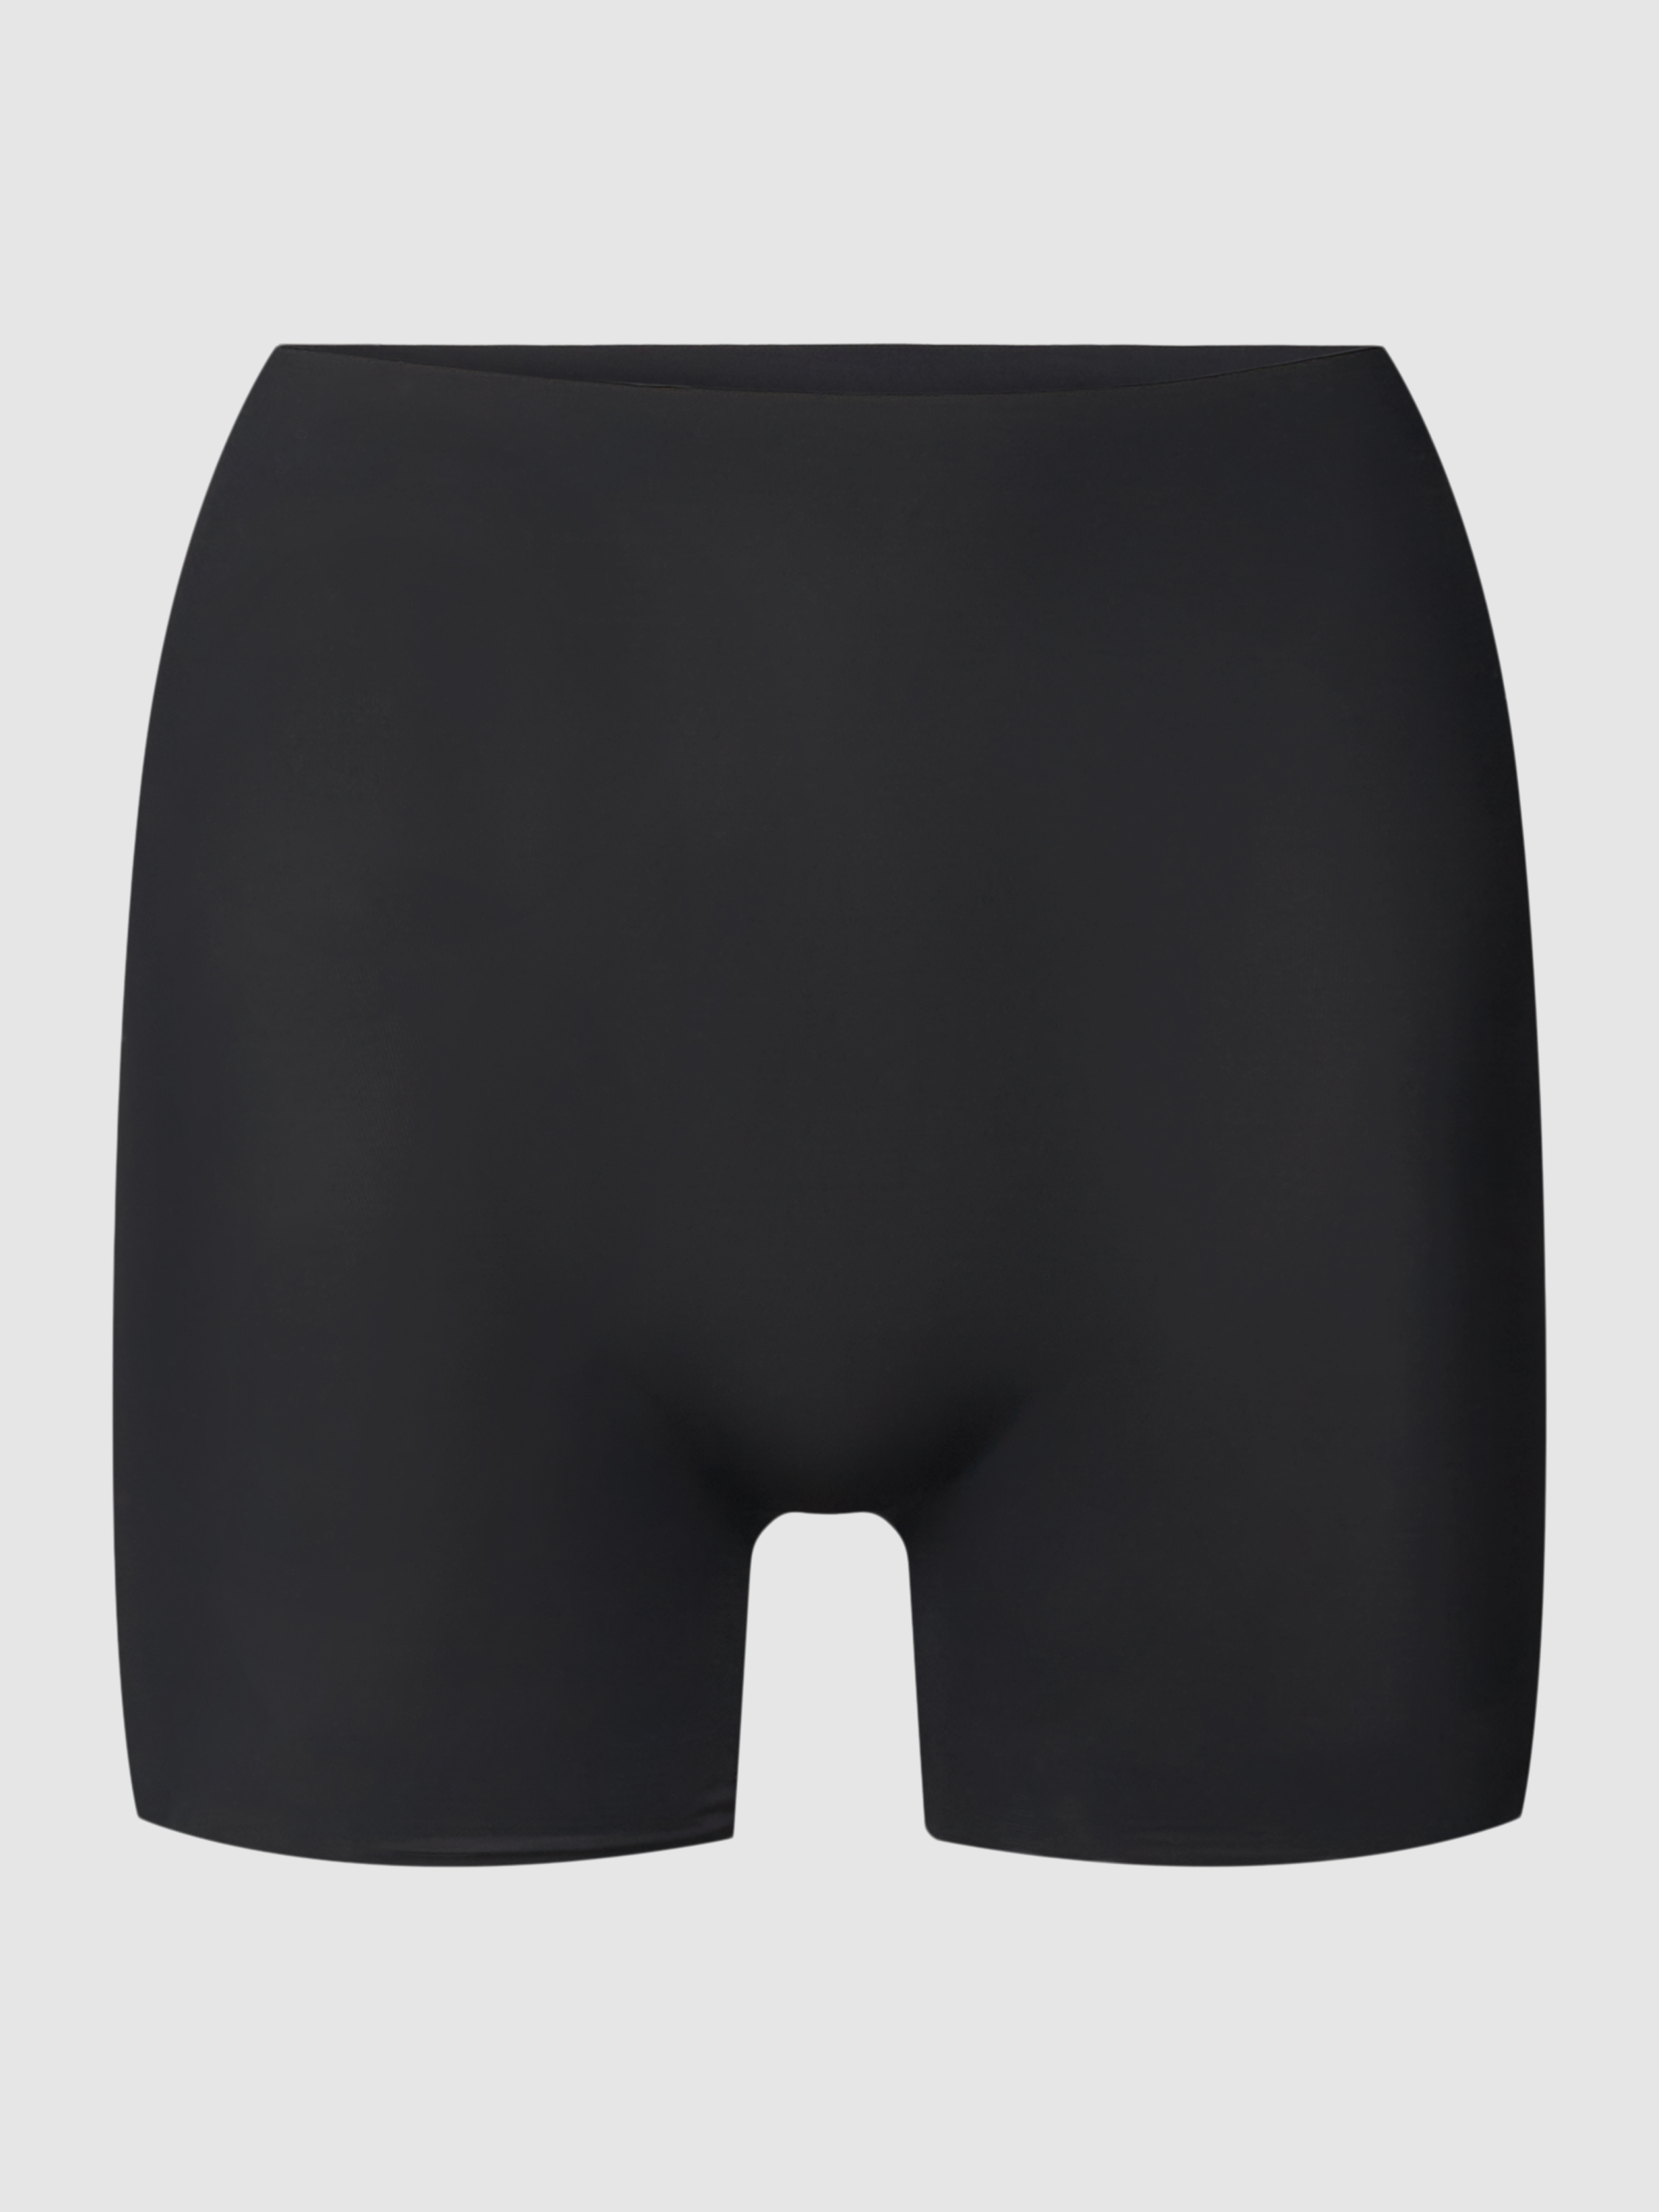 Cпортивные шорты женские Magic BodyFashion 1836347 черные XL (доставка из-за рубежа)